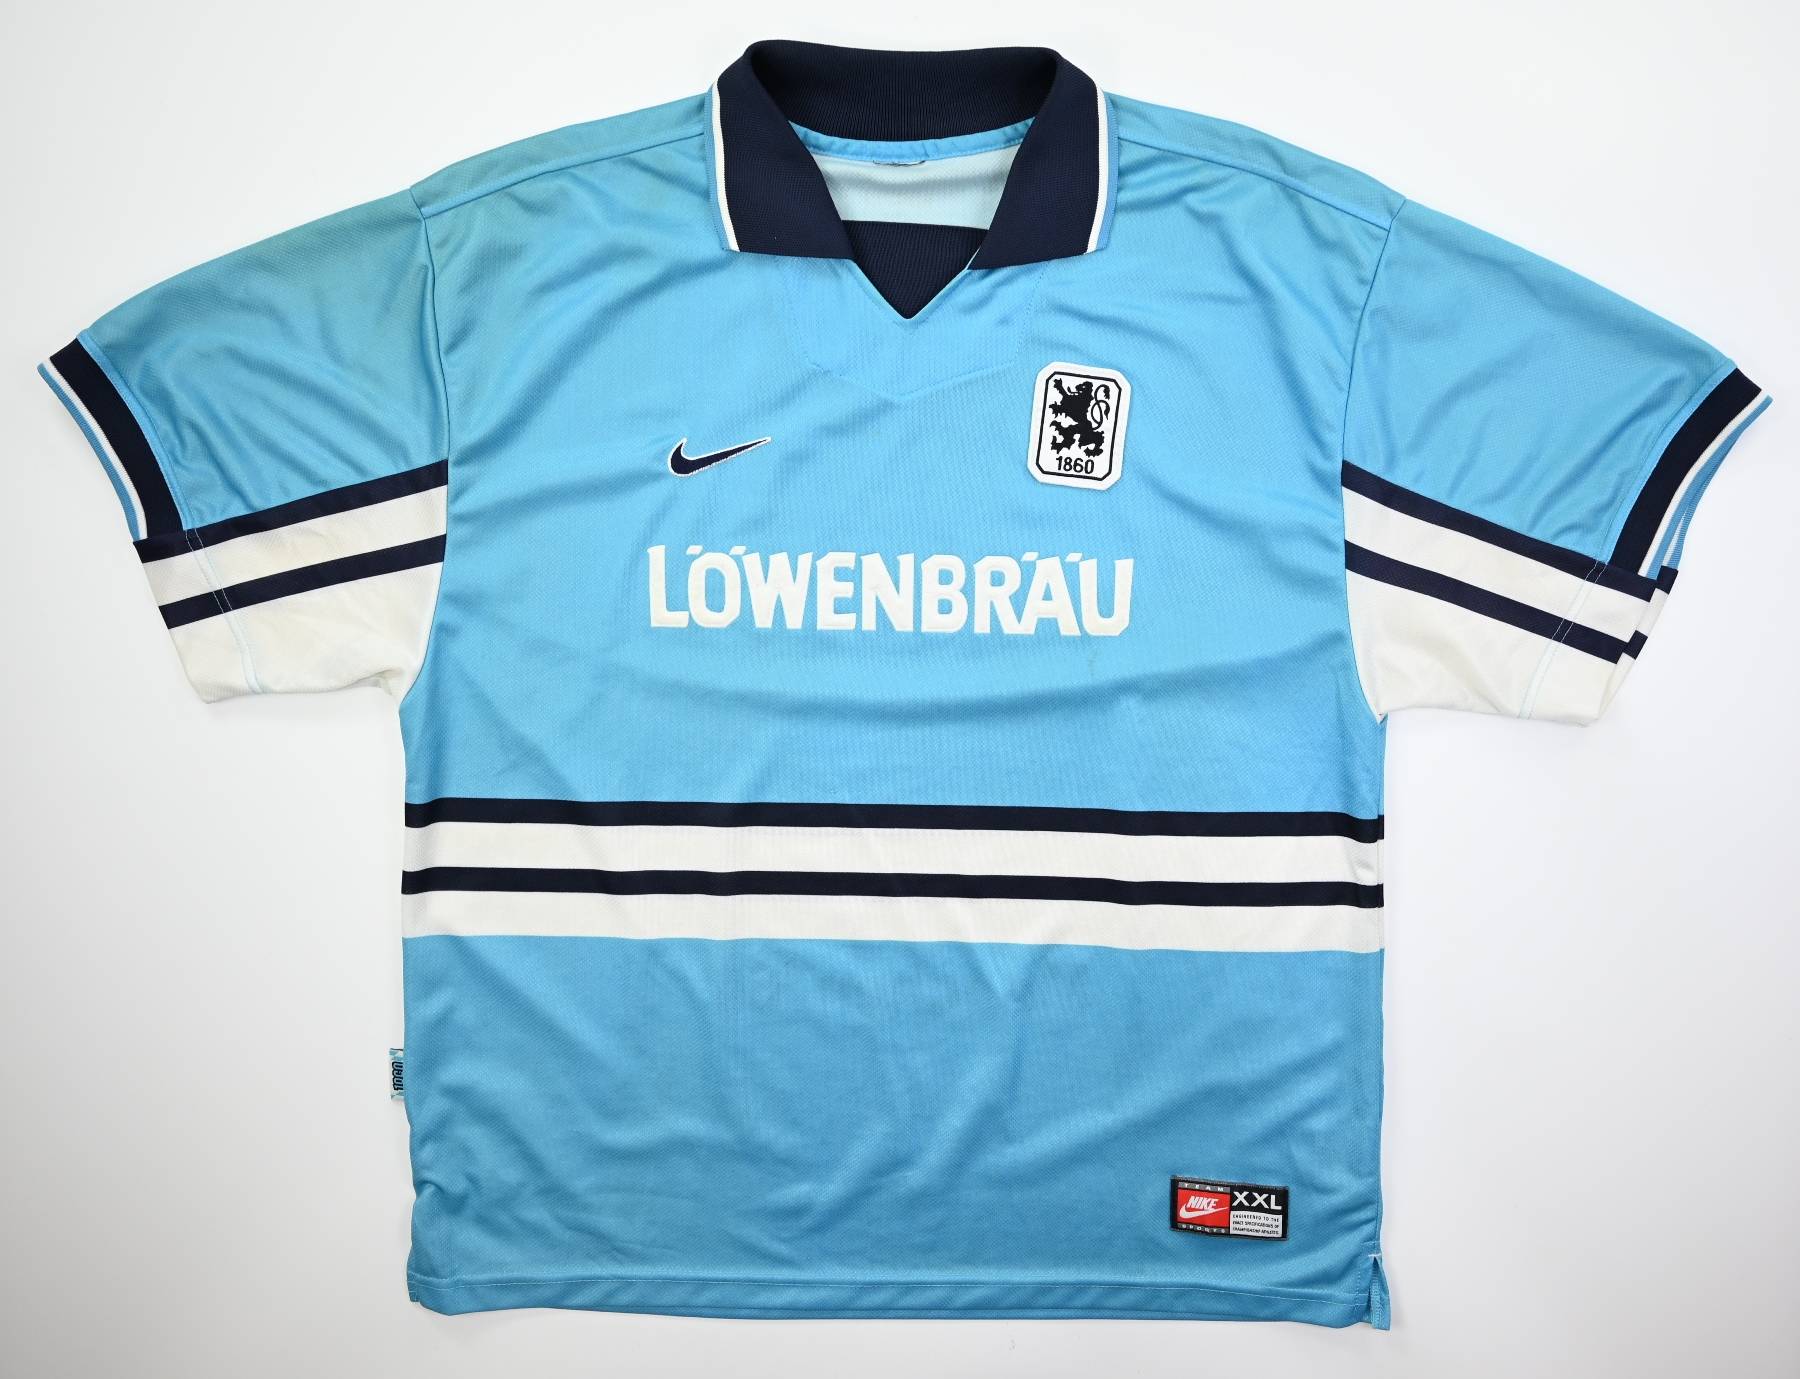 1860 Munich Away football shirt 1997 - 1998.